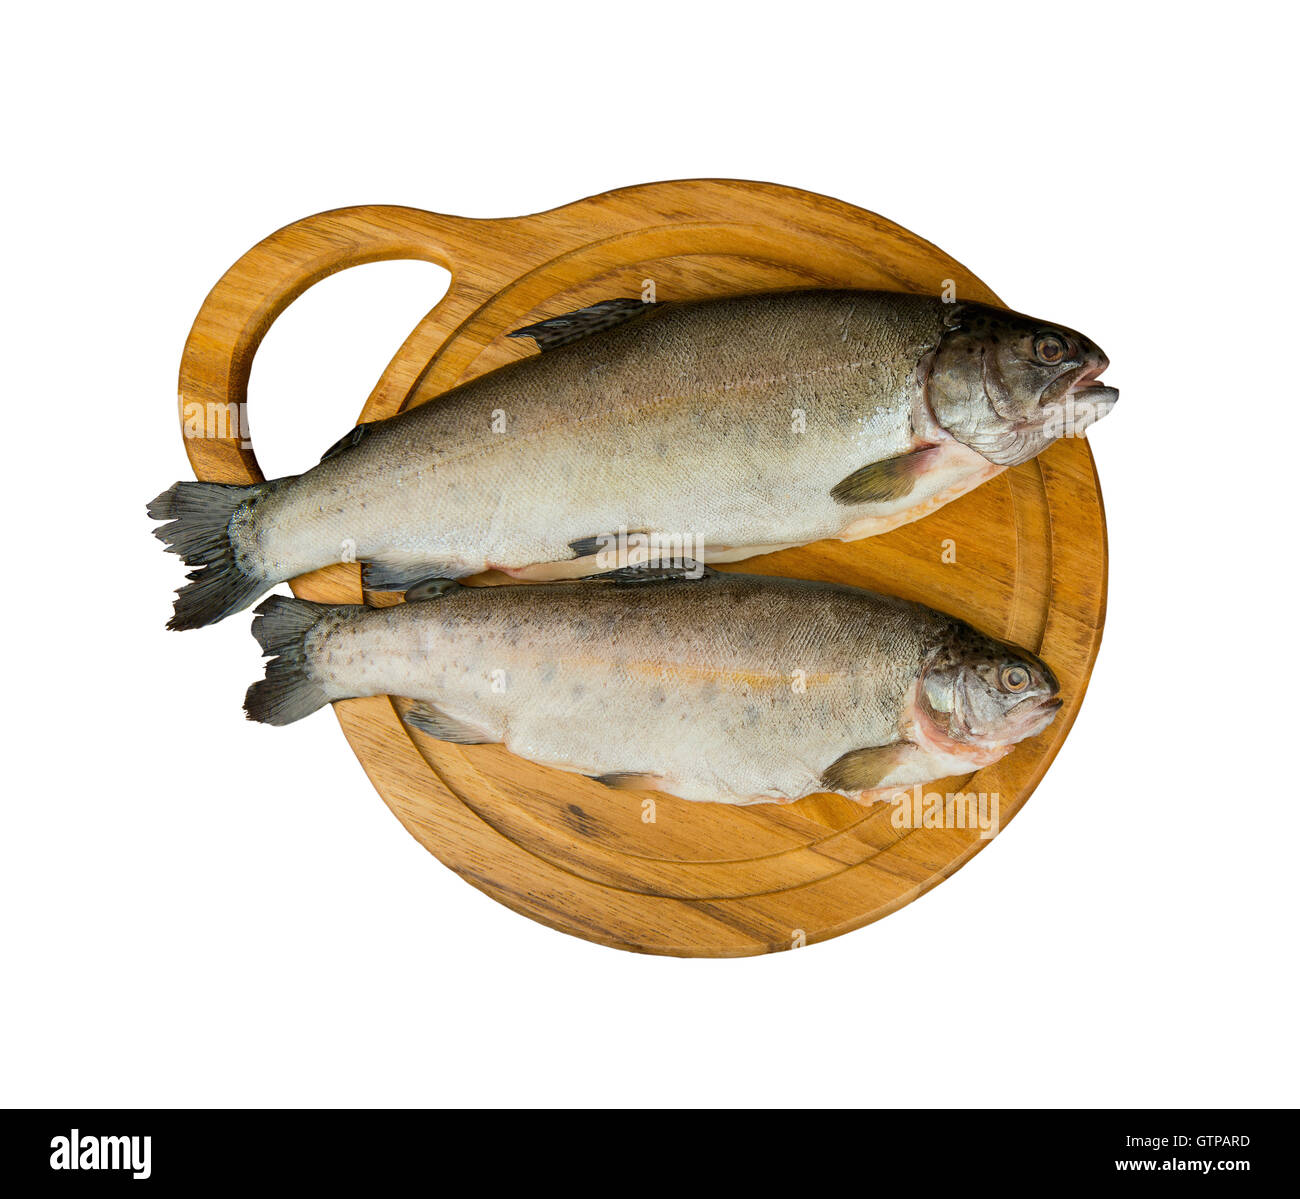 Frischen rohen Fisch Forelle ist zwei Figuren auf dem Brett zum Schneiden von Lebensmitteln Draufsicht - isoliert auf weiss Stockfoto